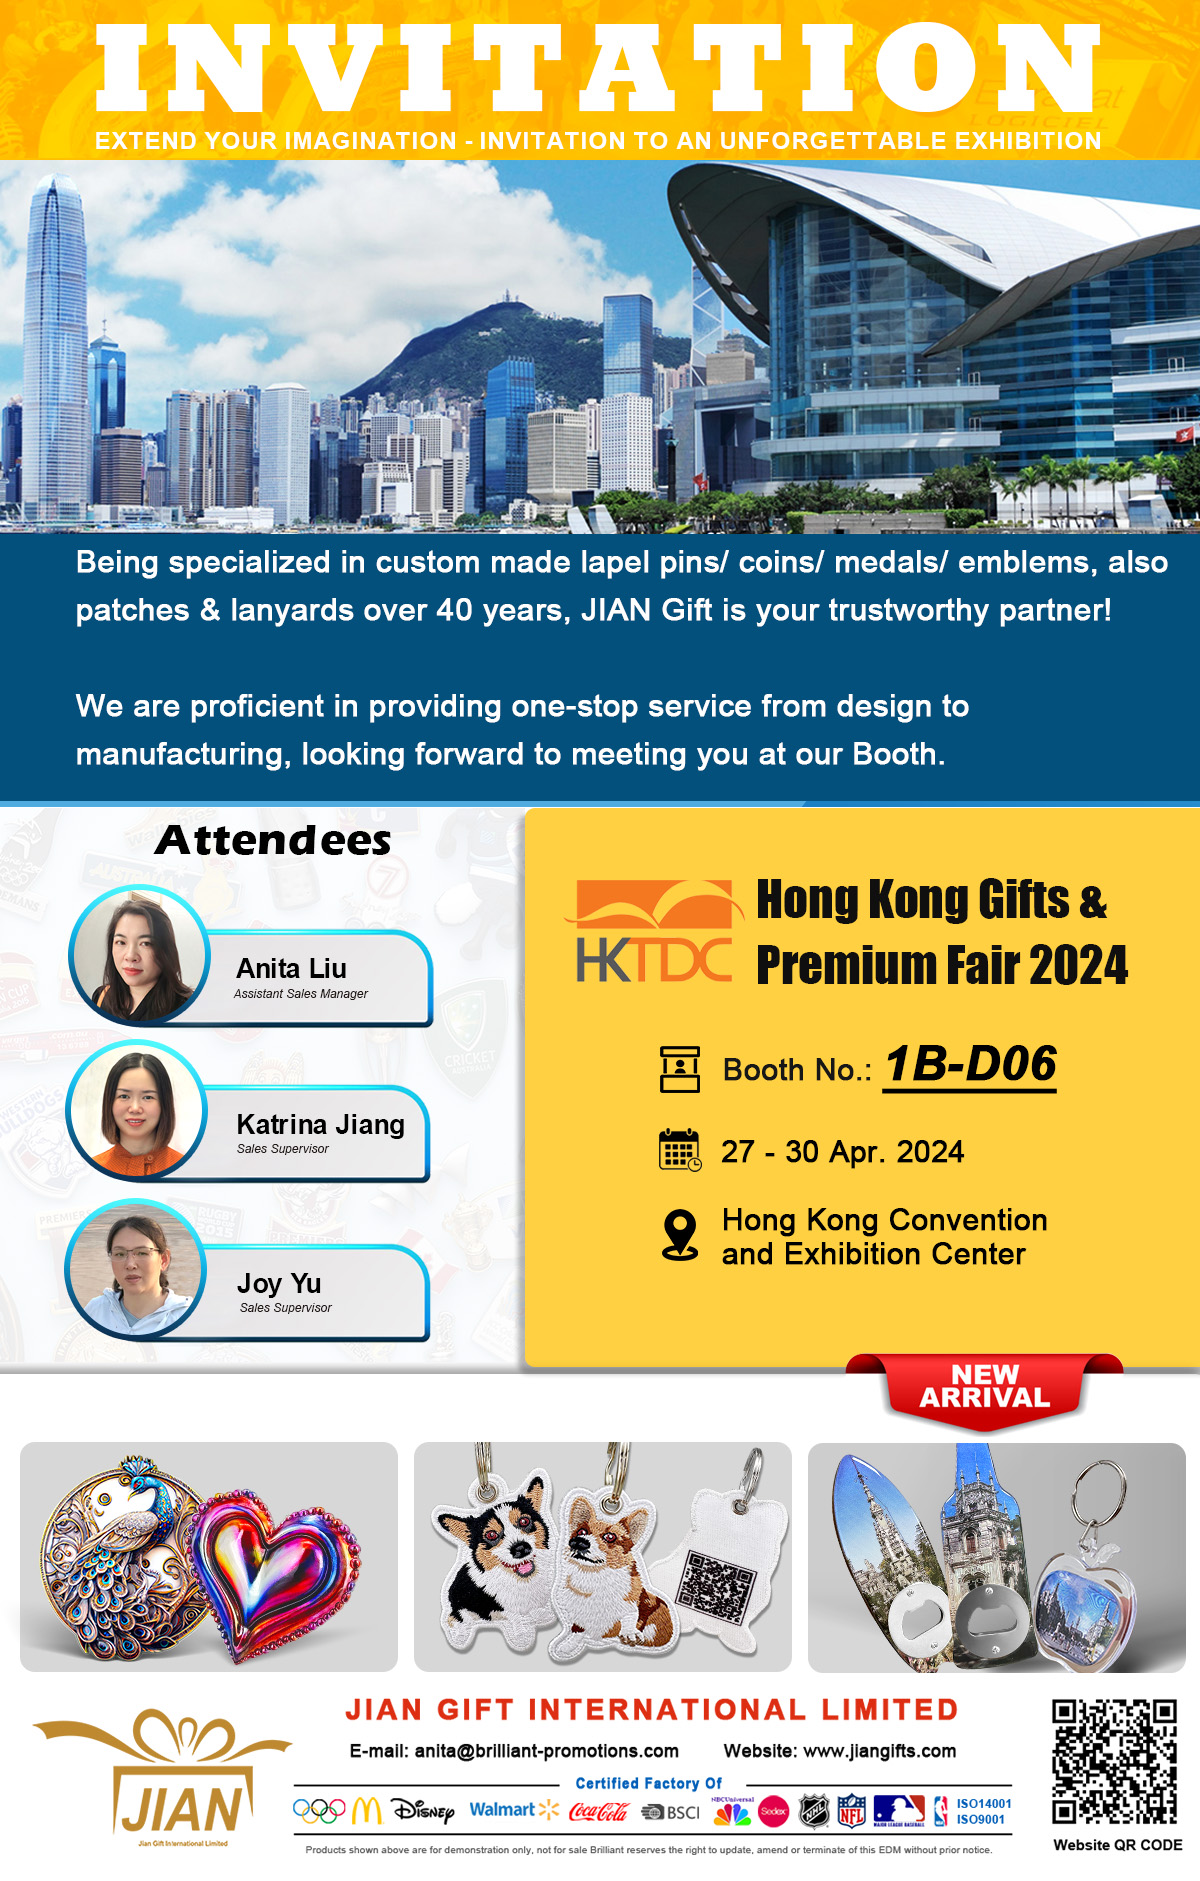 Welcome to JIAN GIFT Hong Kong Gifts & Premium Fair 2024